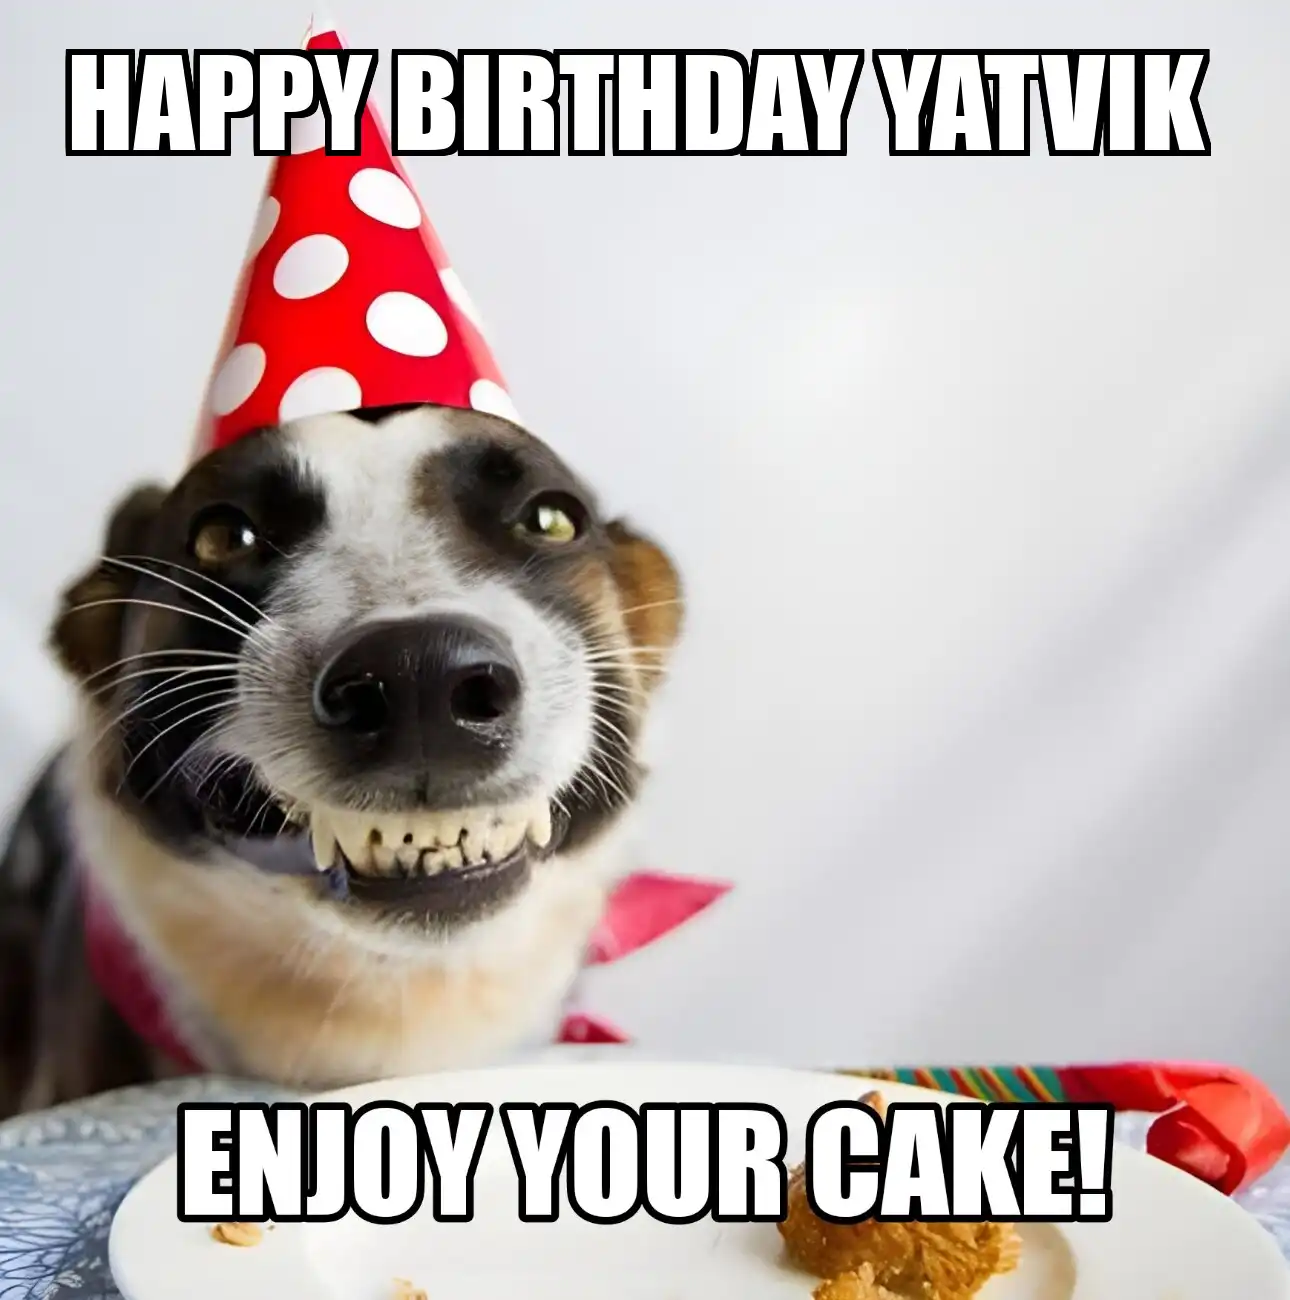 Happy Birthday Yatvik Enjoy Your Cake Dog Meme